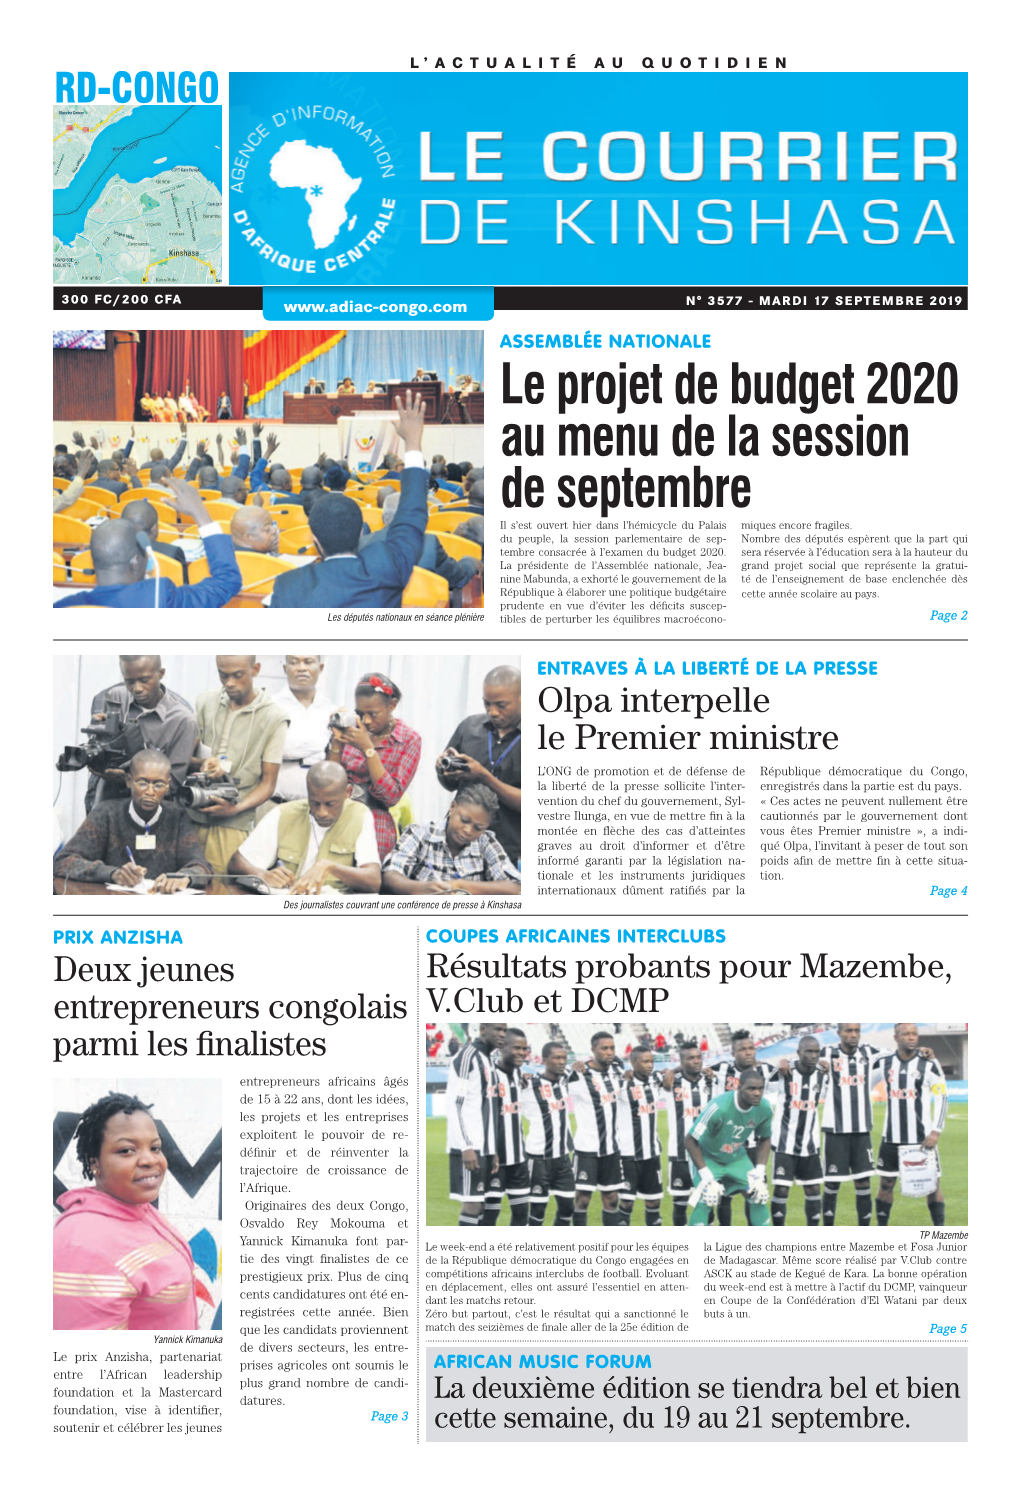 Le Projet De Budget 2020 Au Menu De La Session De Septembre Il S’Est Ouvert Hier Dans L’Hémicycle Du Palais Miques Encore Fragiles